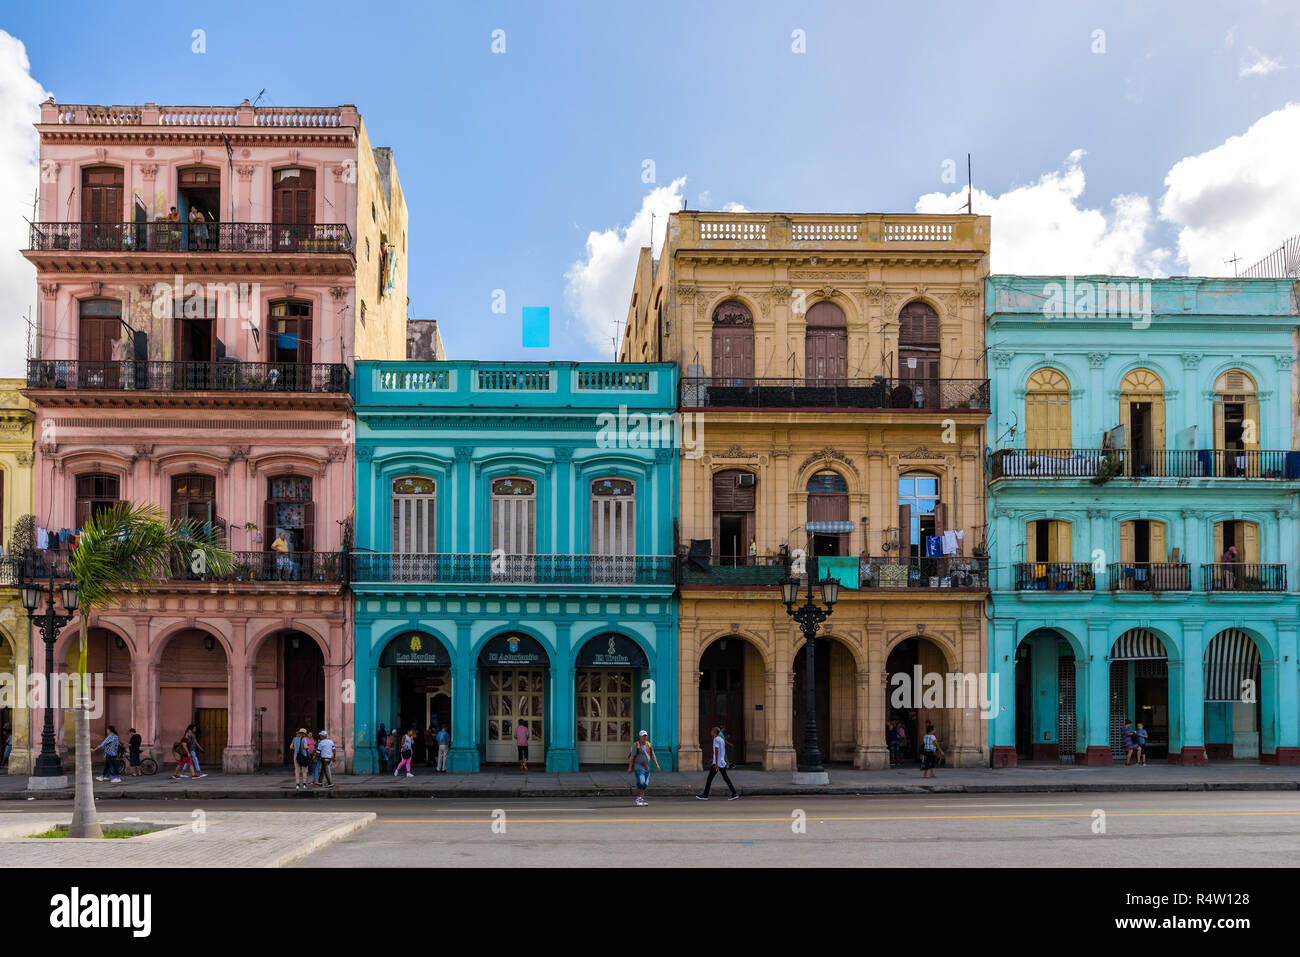 L'architecture des bâtiments colorés classique de La Havane, Cuba. Banque D'Images